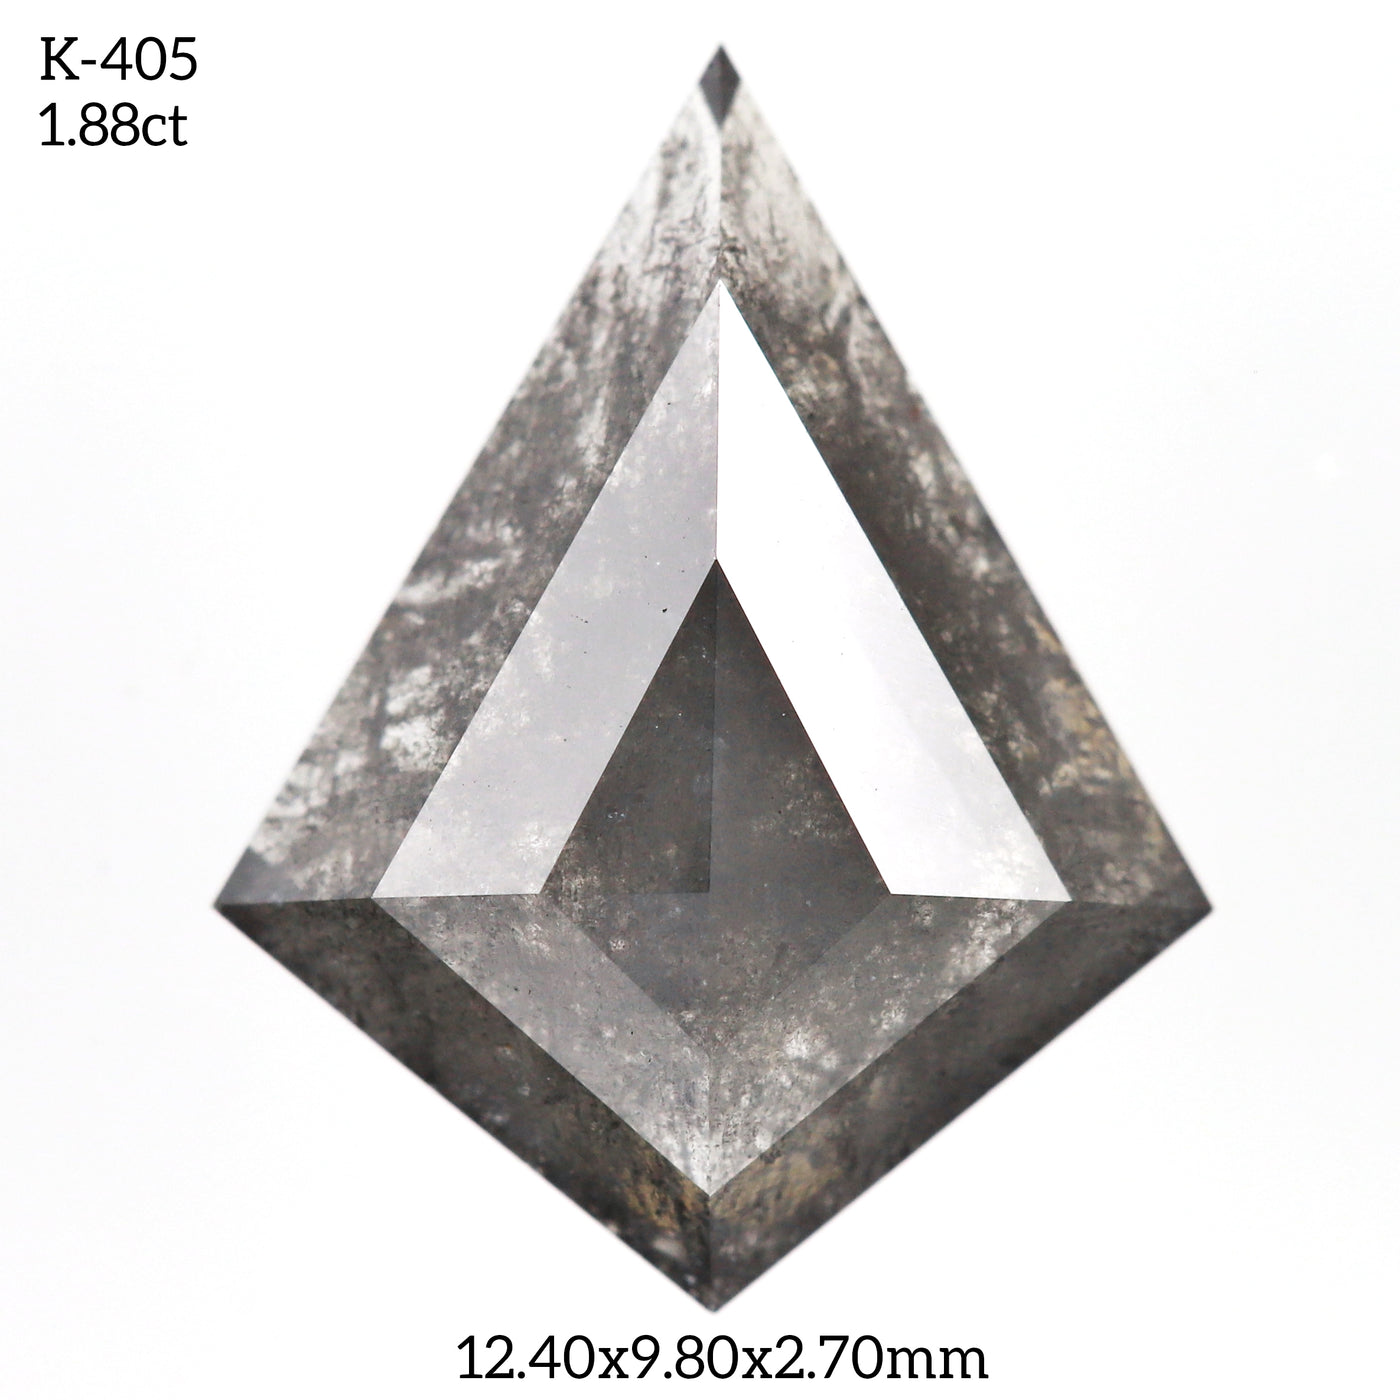 K405 - Salt and pepper kite diamond